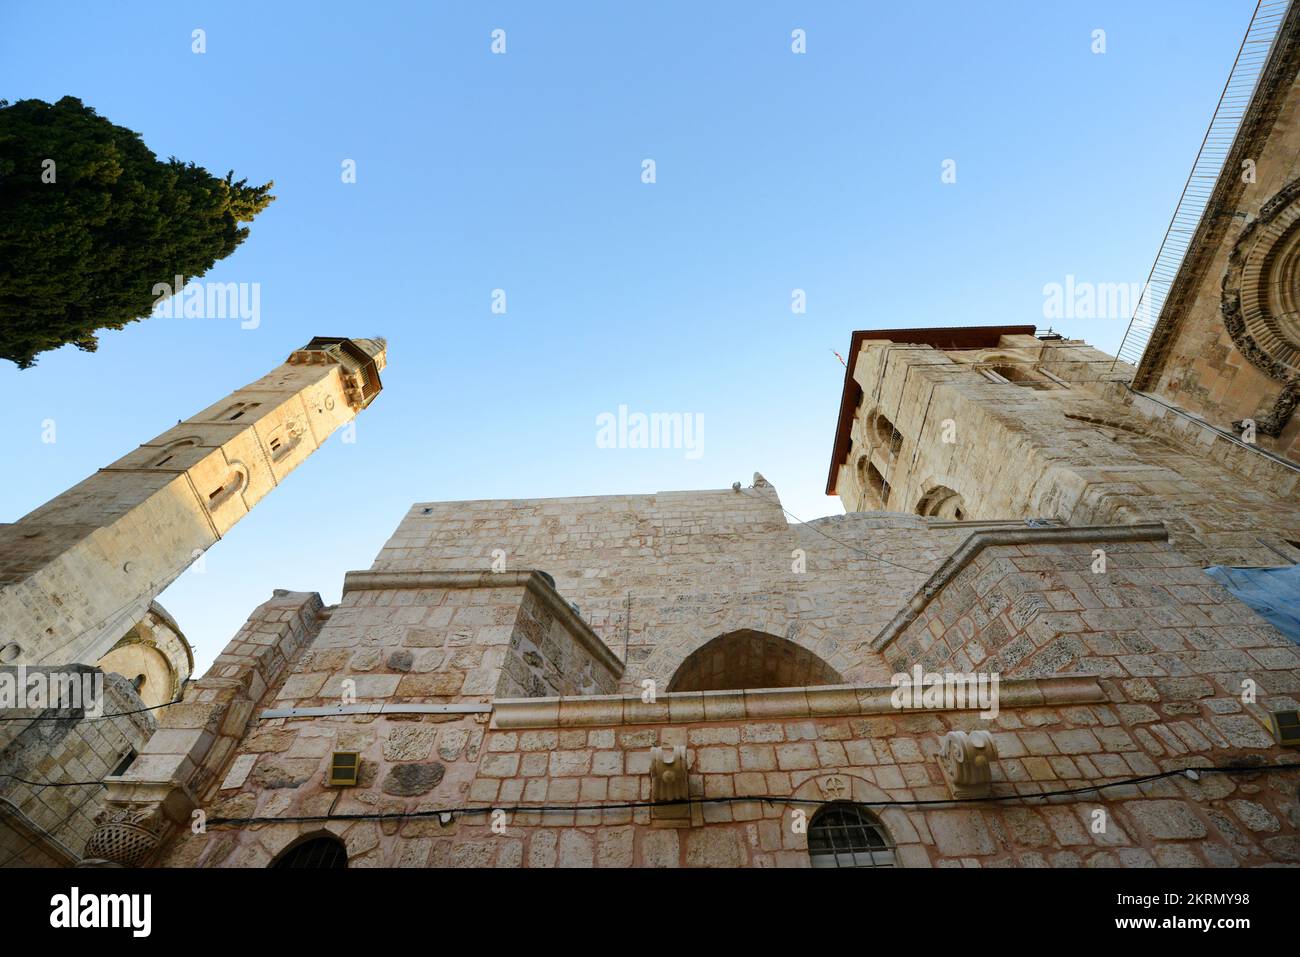 Vue sur la mosquée Omar et l'église du Saint Sépulcre dans le quartier chrétien de la vieille ville de Jérusalem. Banque D'Images